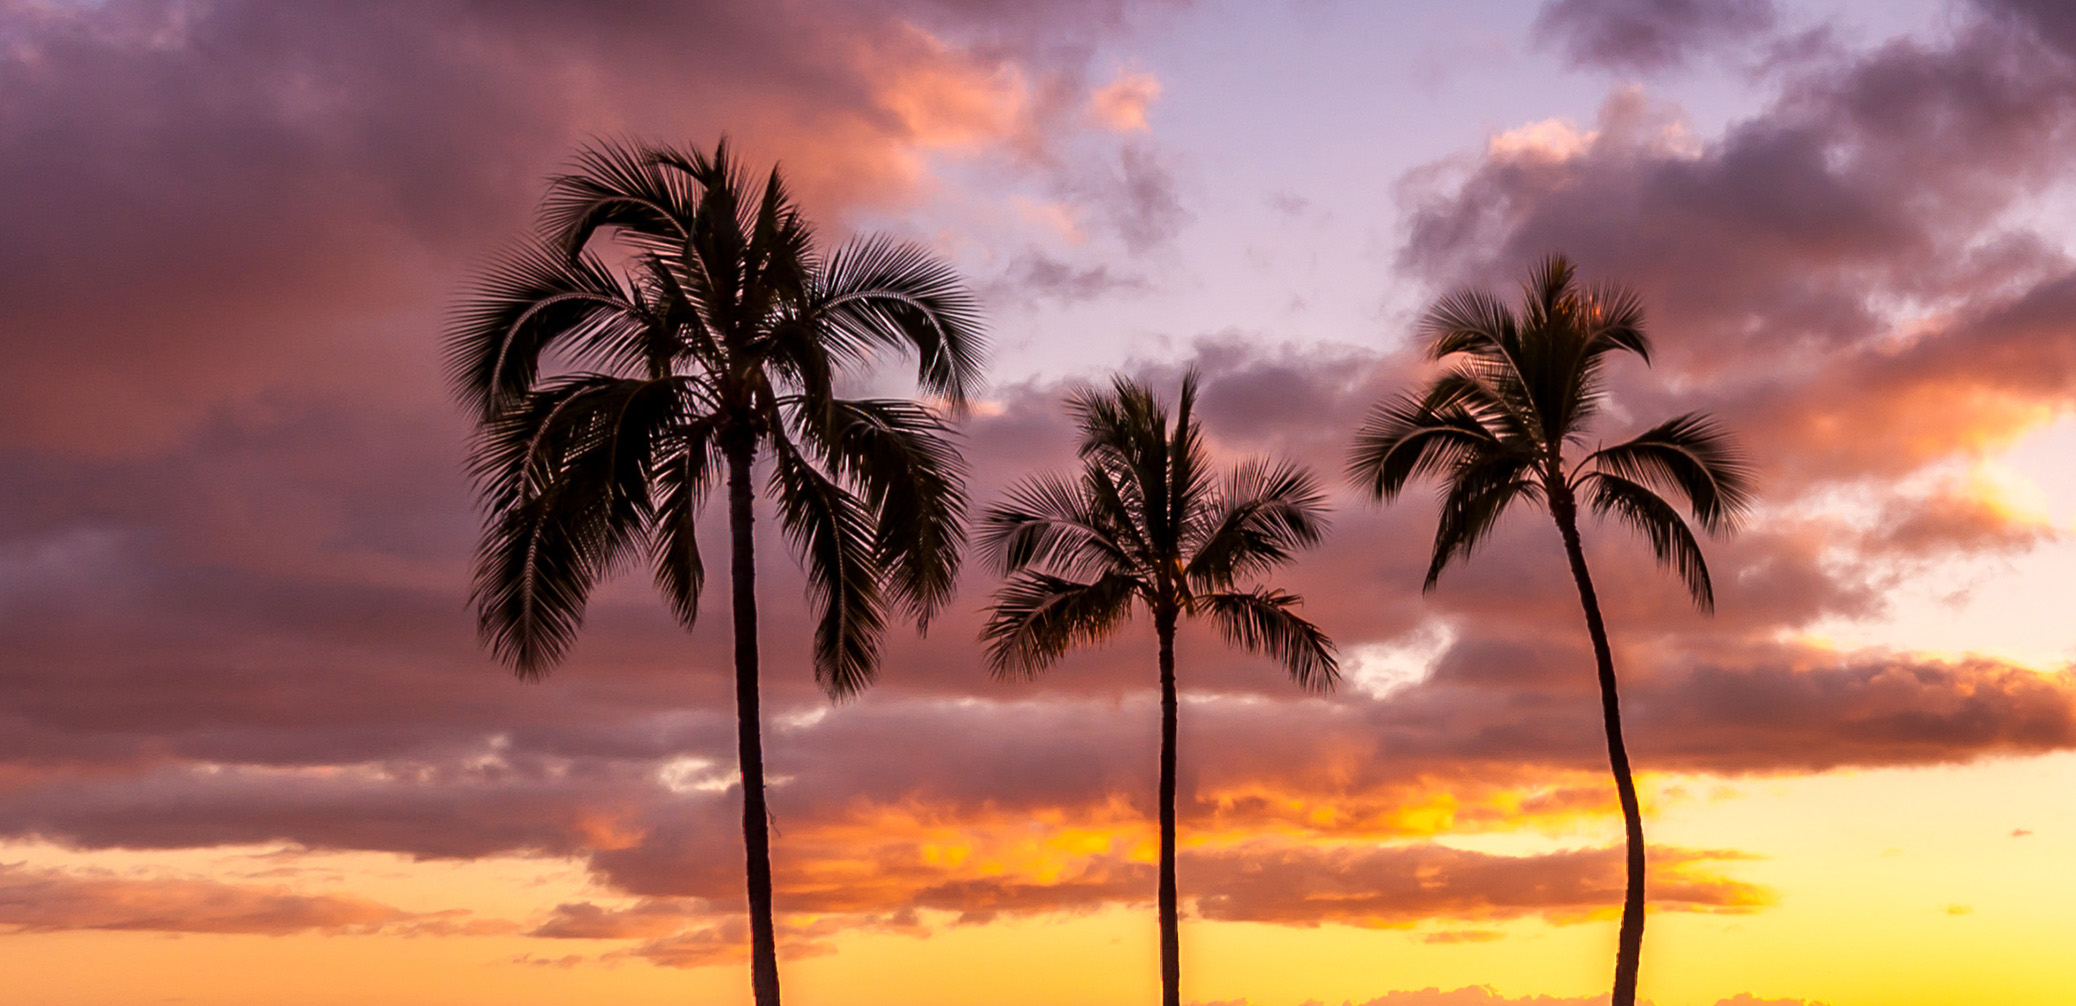 Best Marriott In Waikiki: Sheraton Waikiki Or Moana Surfrider